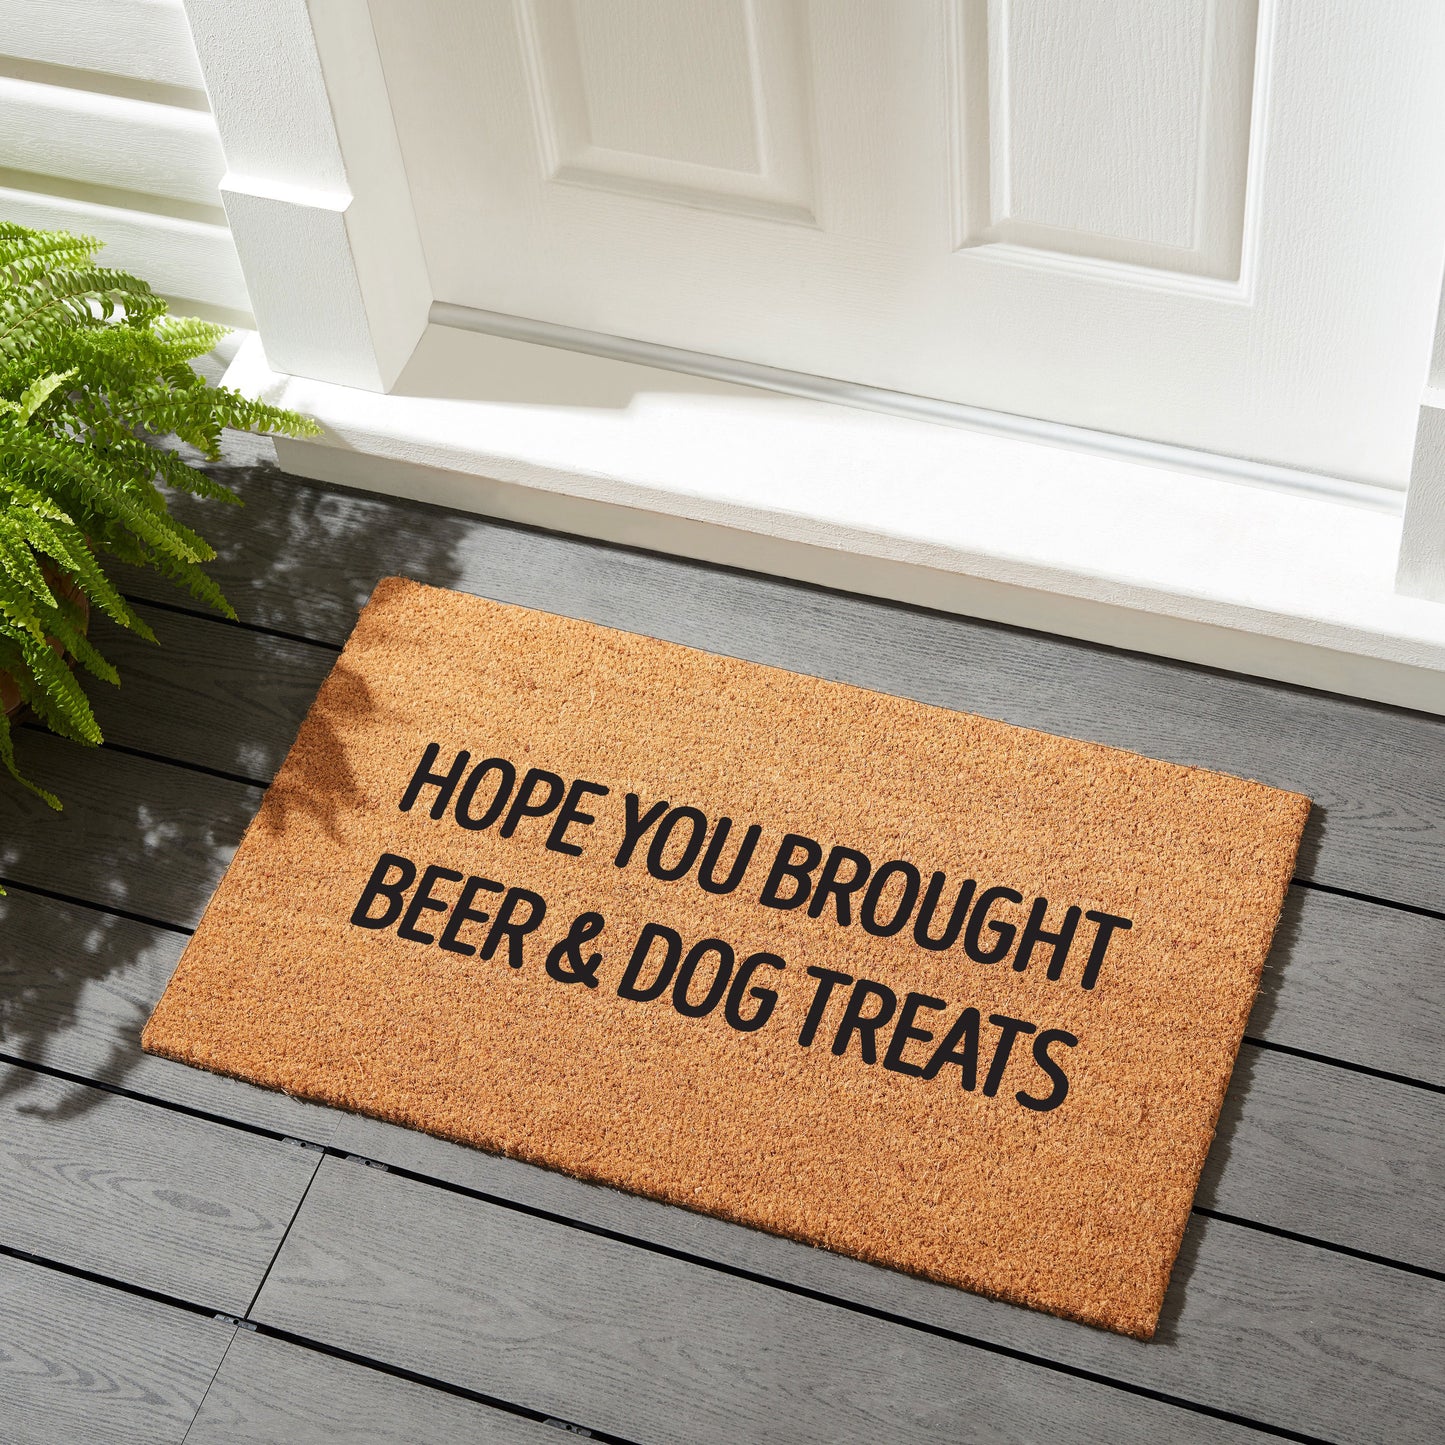 Hope You Brought Beer & Dog Treats - Coir Doormat